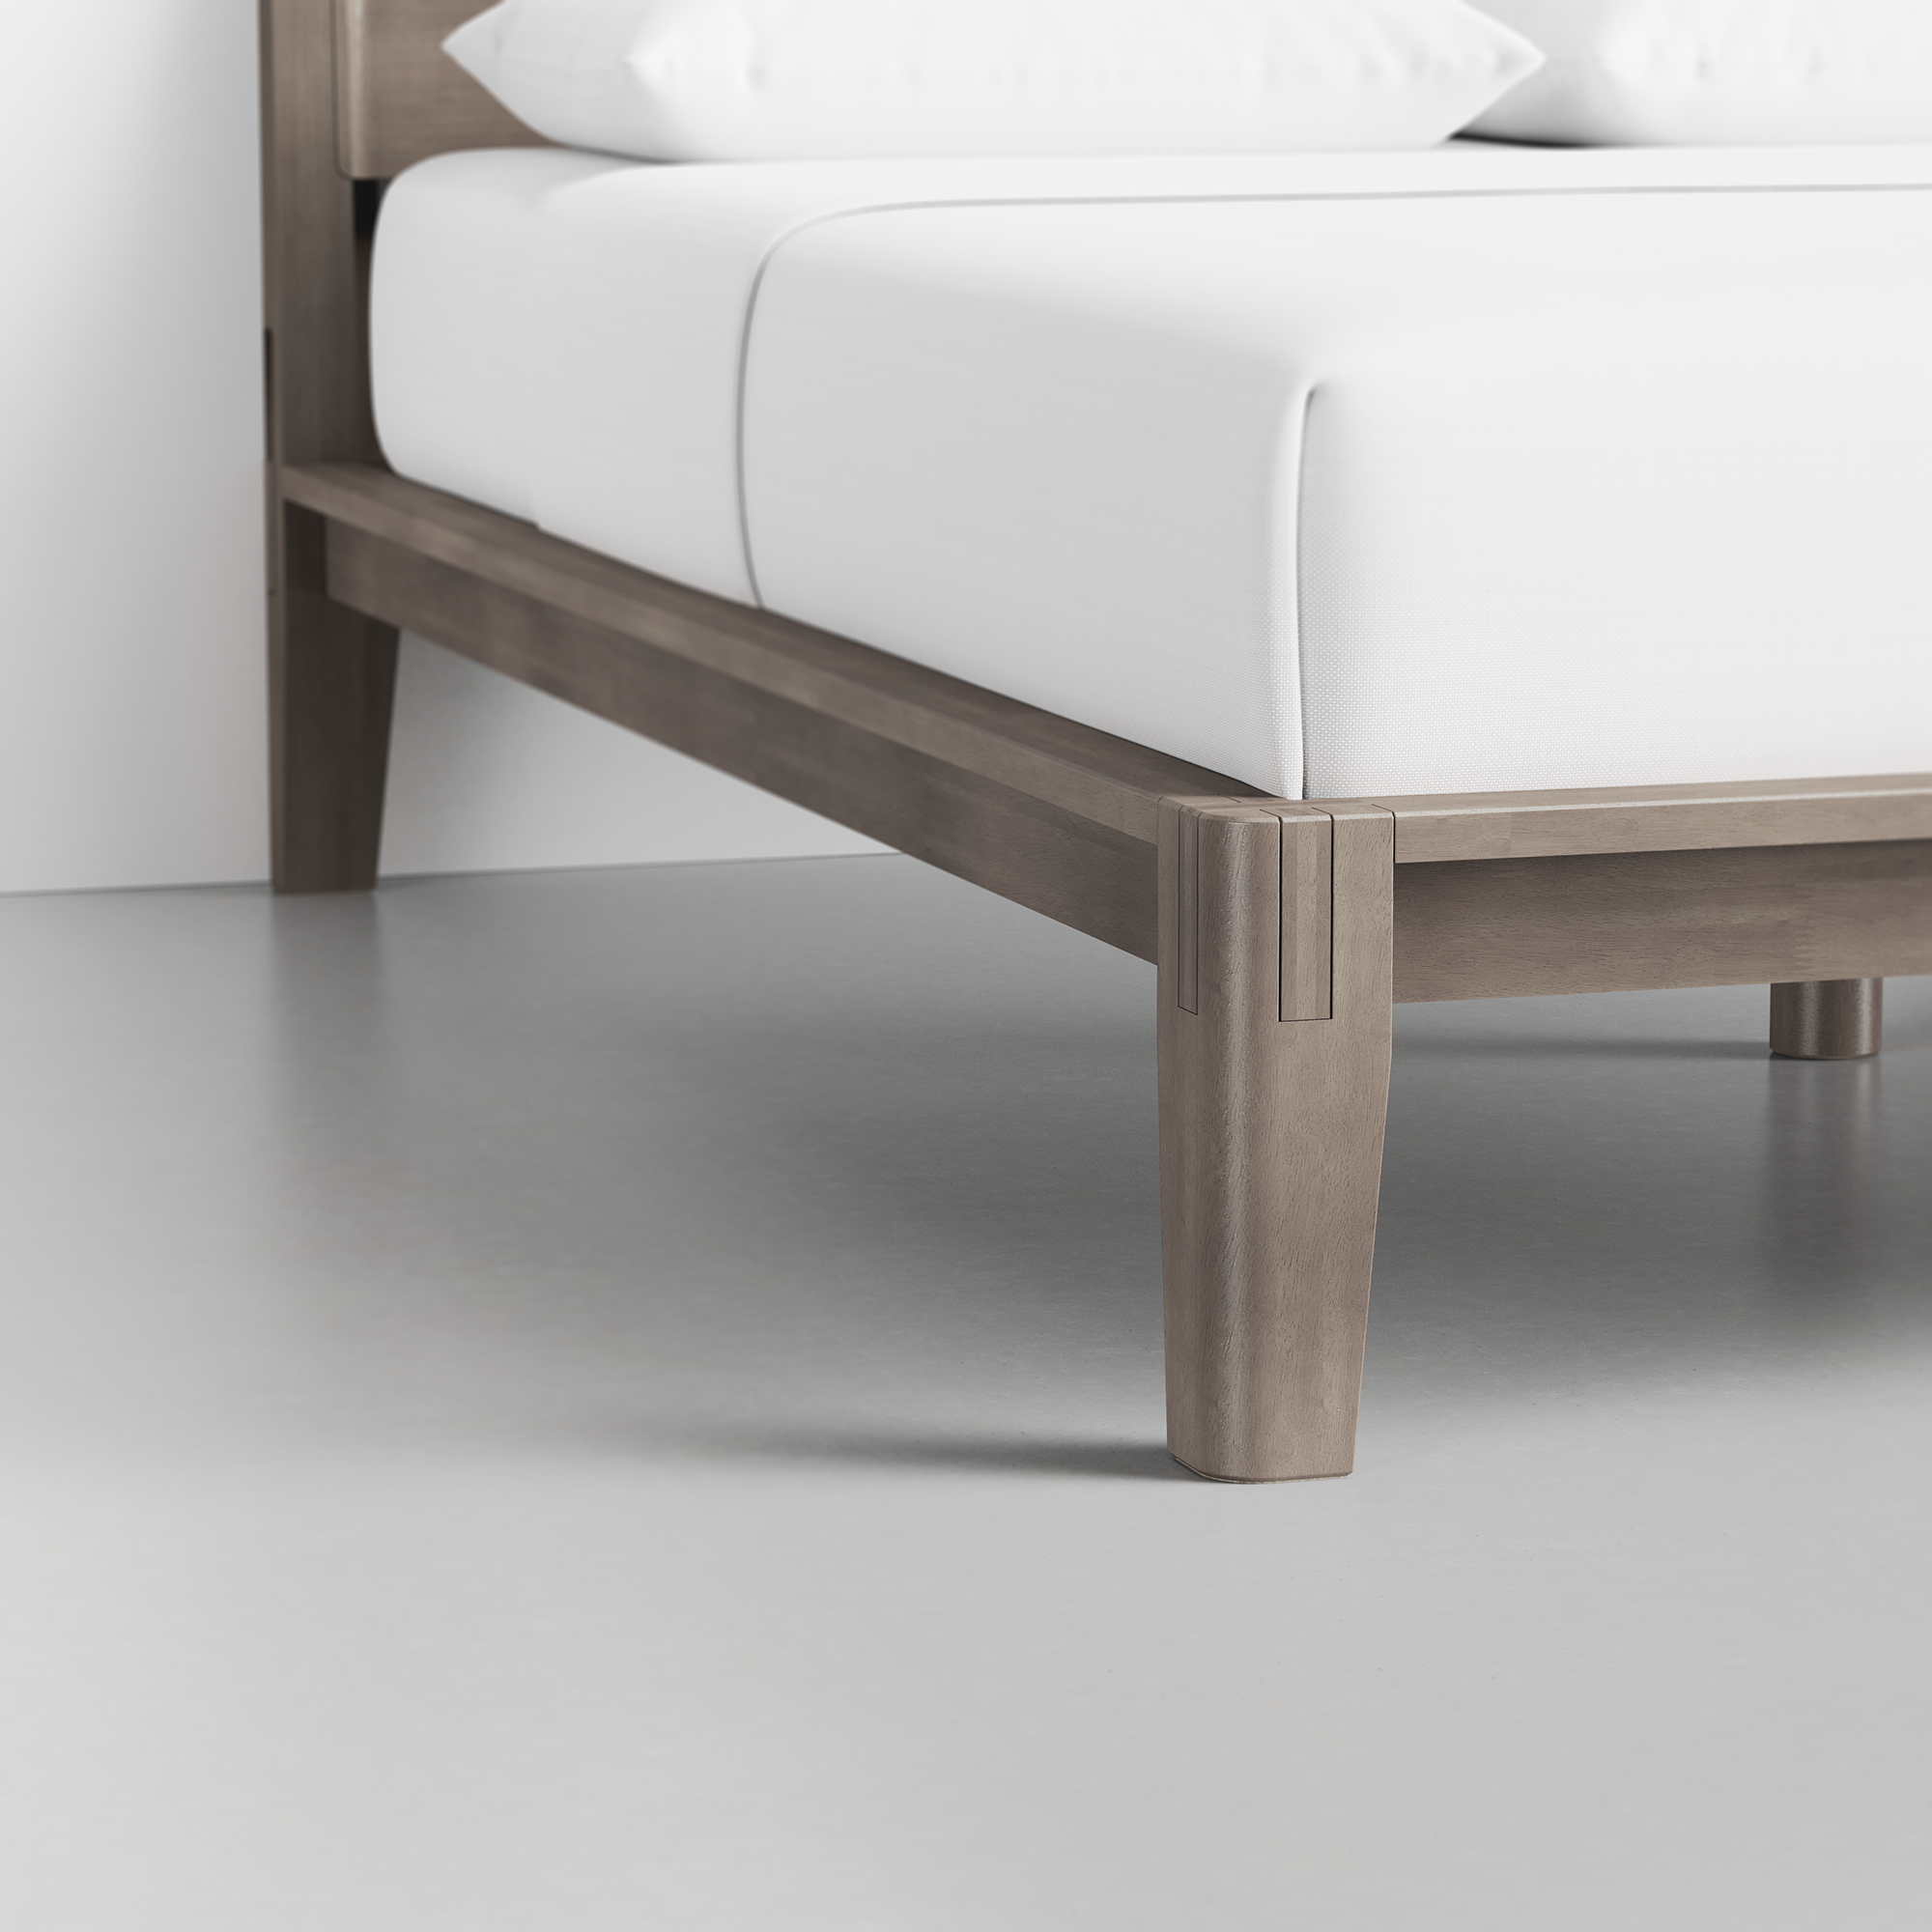 The Bed (Grey / Headboard) - Render - Foot Detail